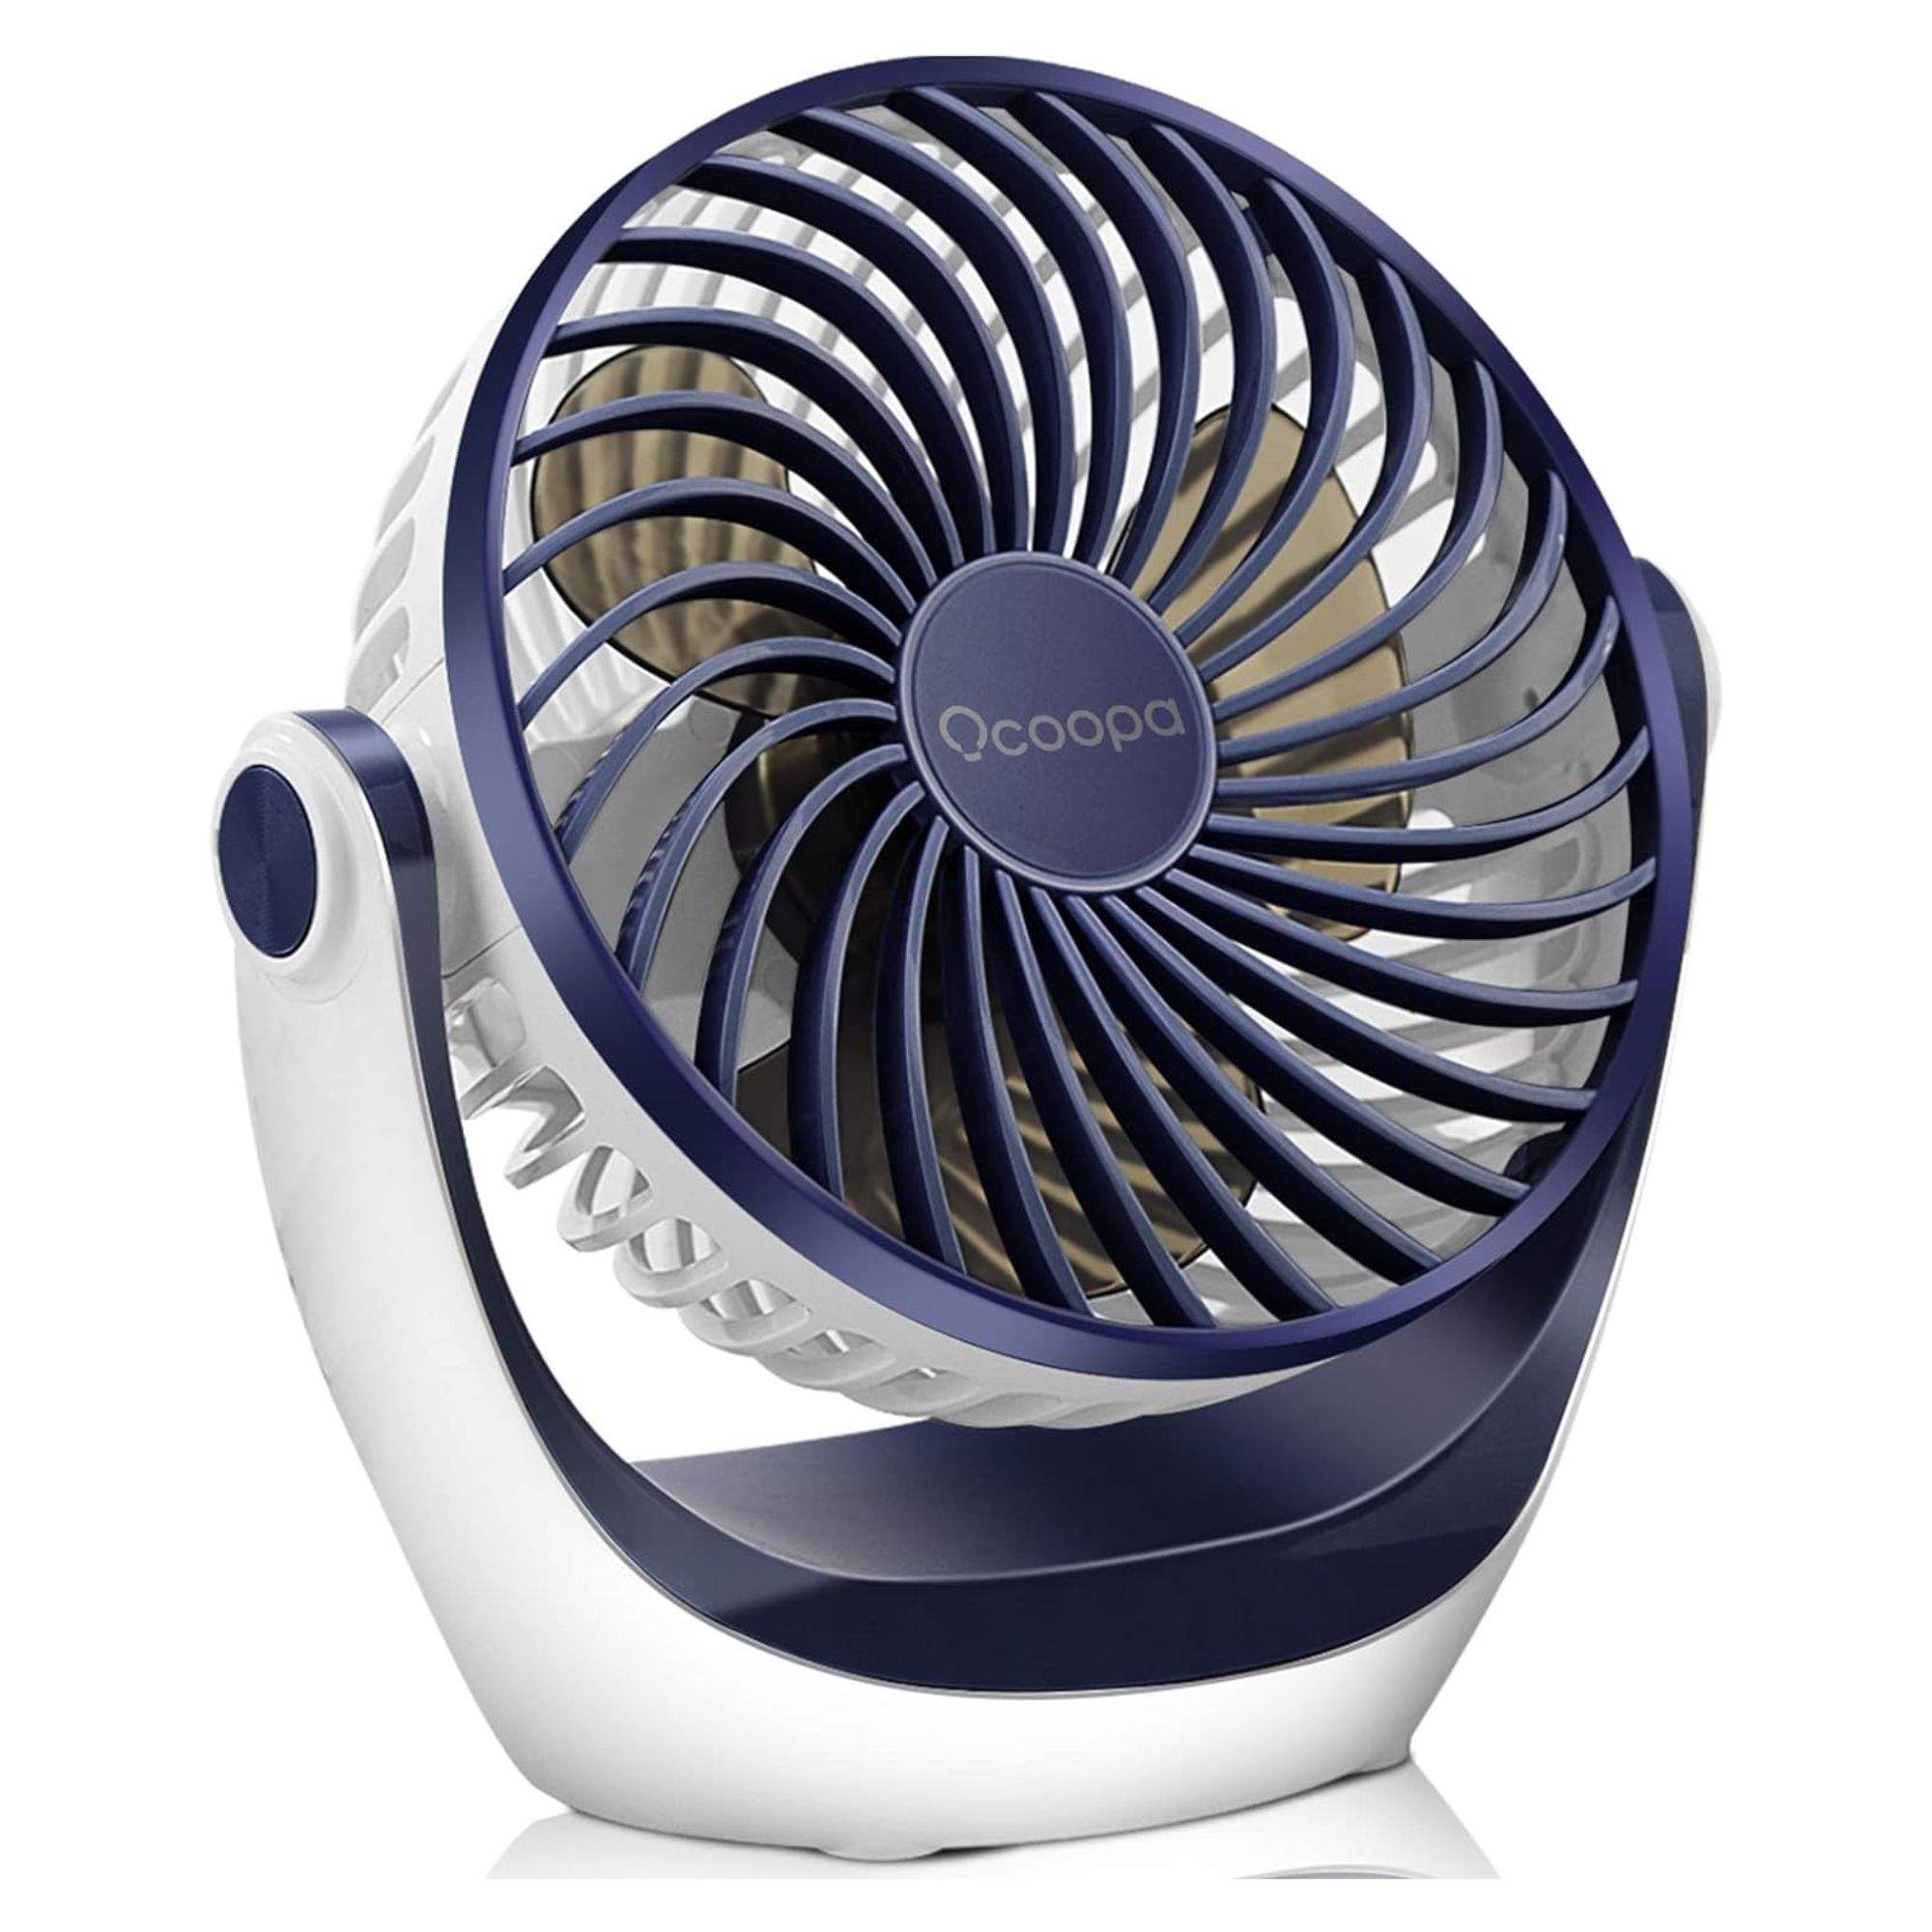 Ha arribat el moment d'escollir ventilador per a les llargues jornades caloroses d'estiu. A Amazon, per 17 €.